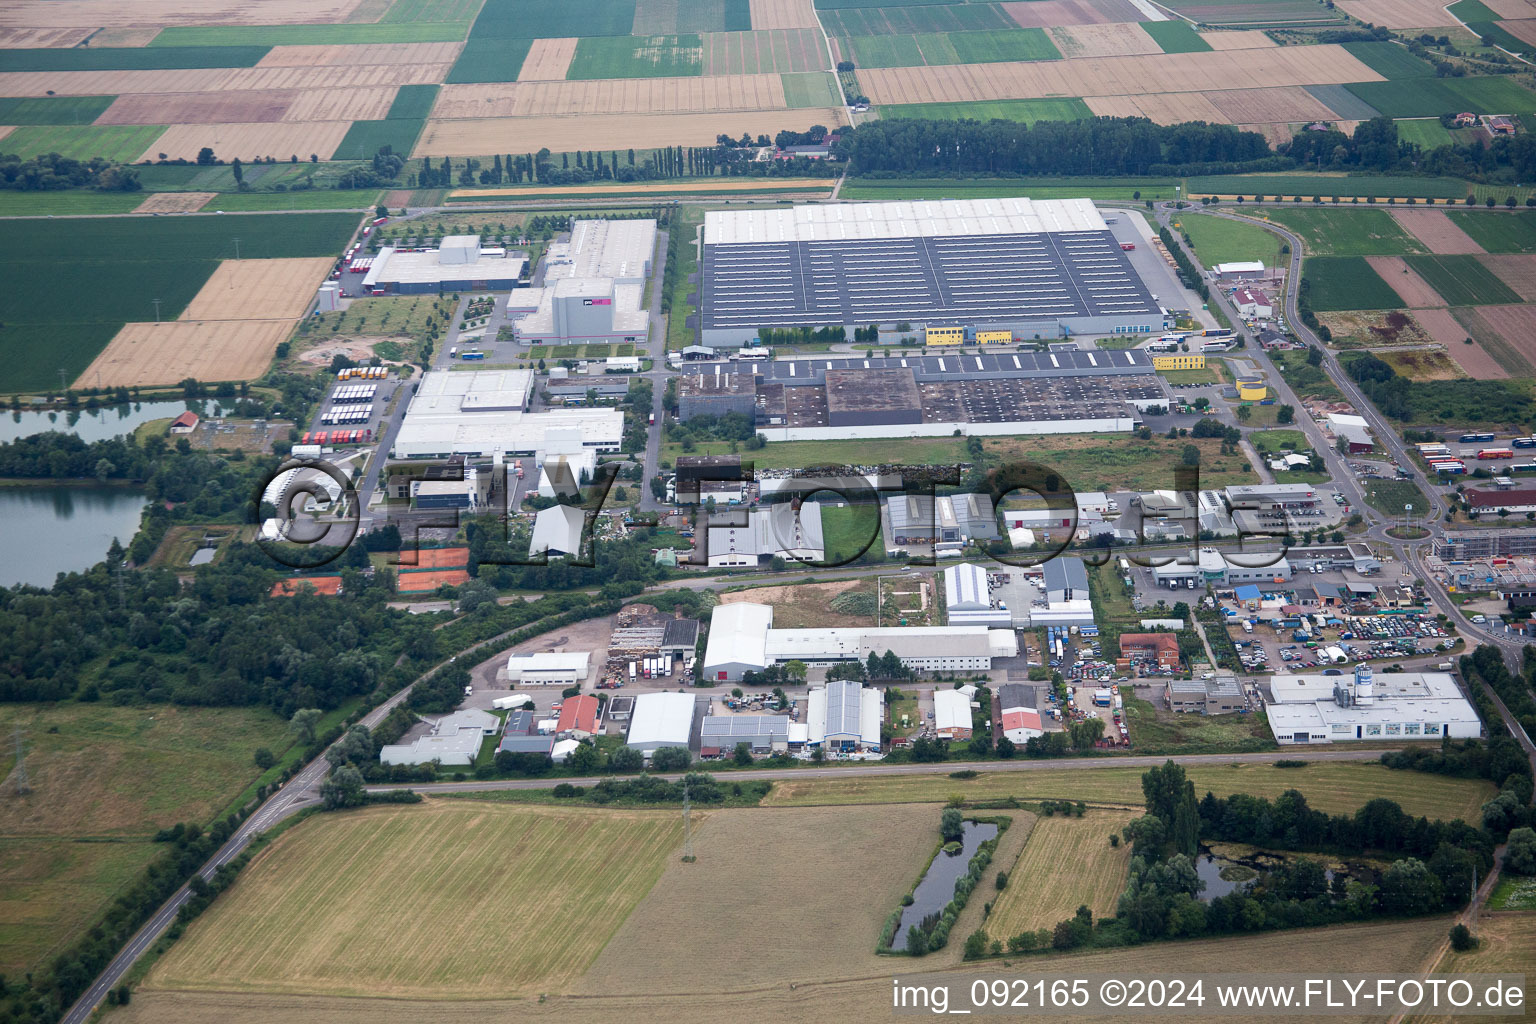 Vue aérienne de Zone industrielle de l'Est à Offenbach an der Queich dans le département Rhénanie-Palatinat, Allemagne